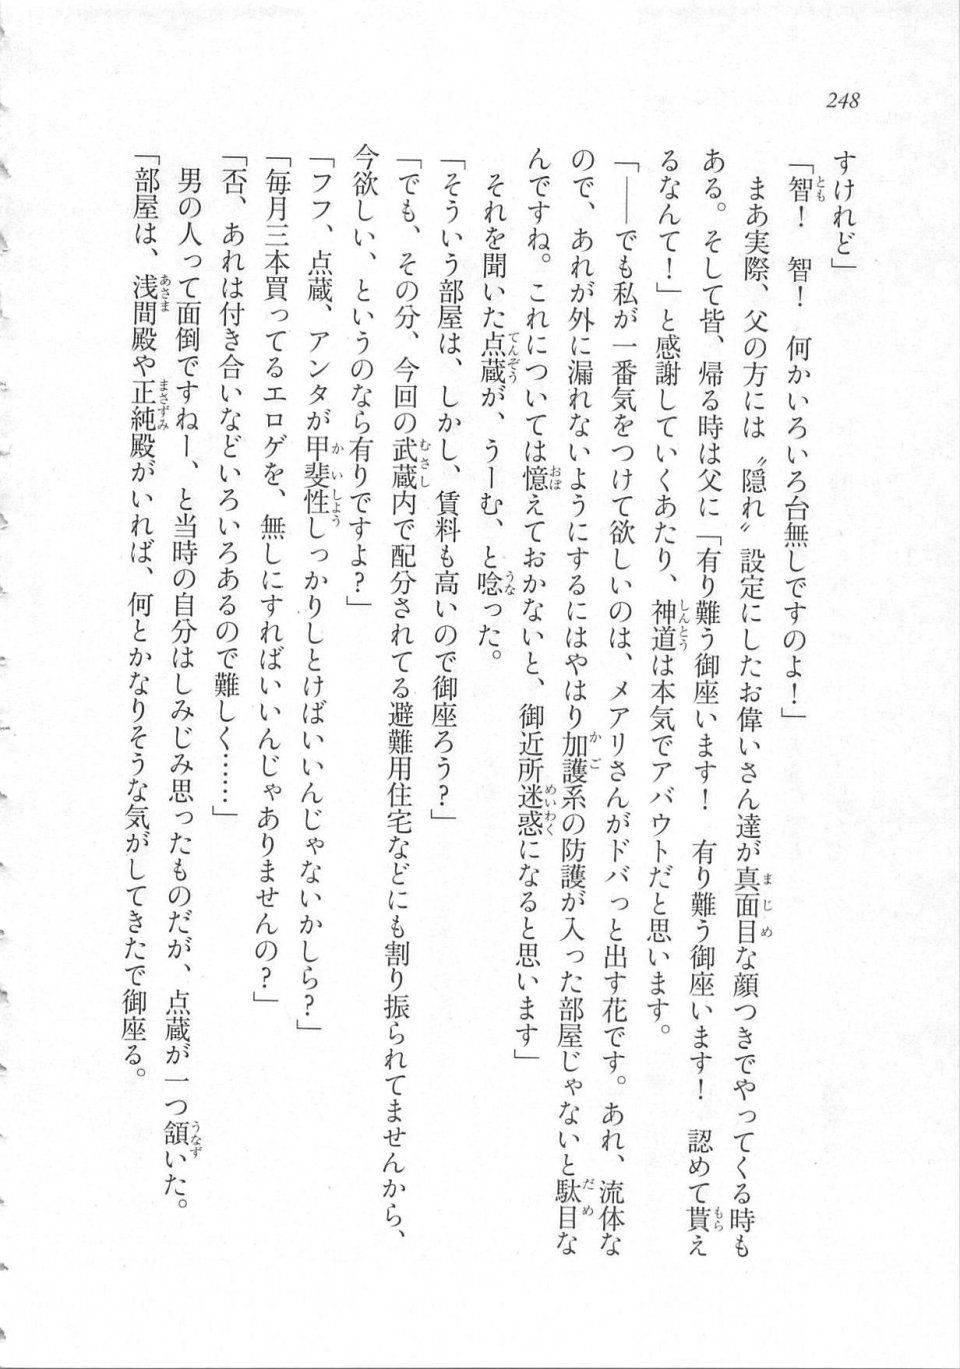 Kyoukai Senjou no Horizon LN Sidestory Vol 3 - Photo #252